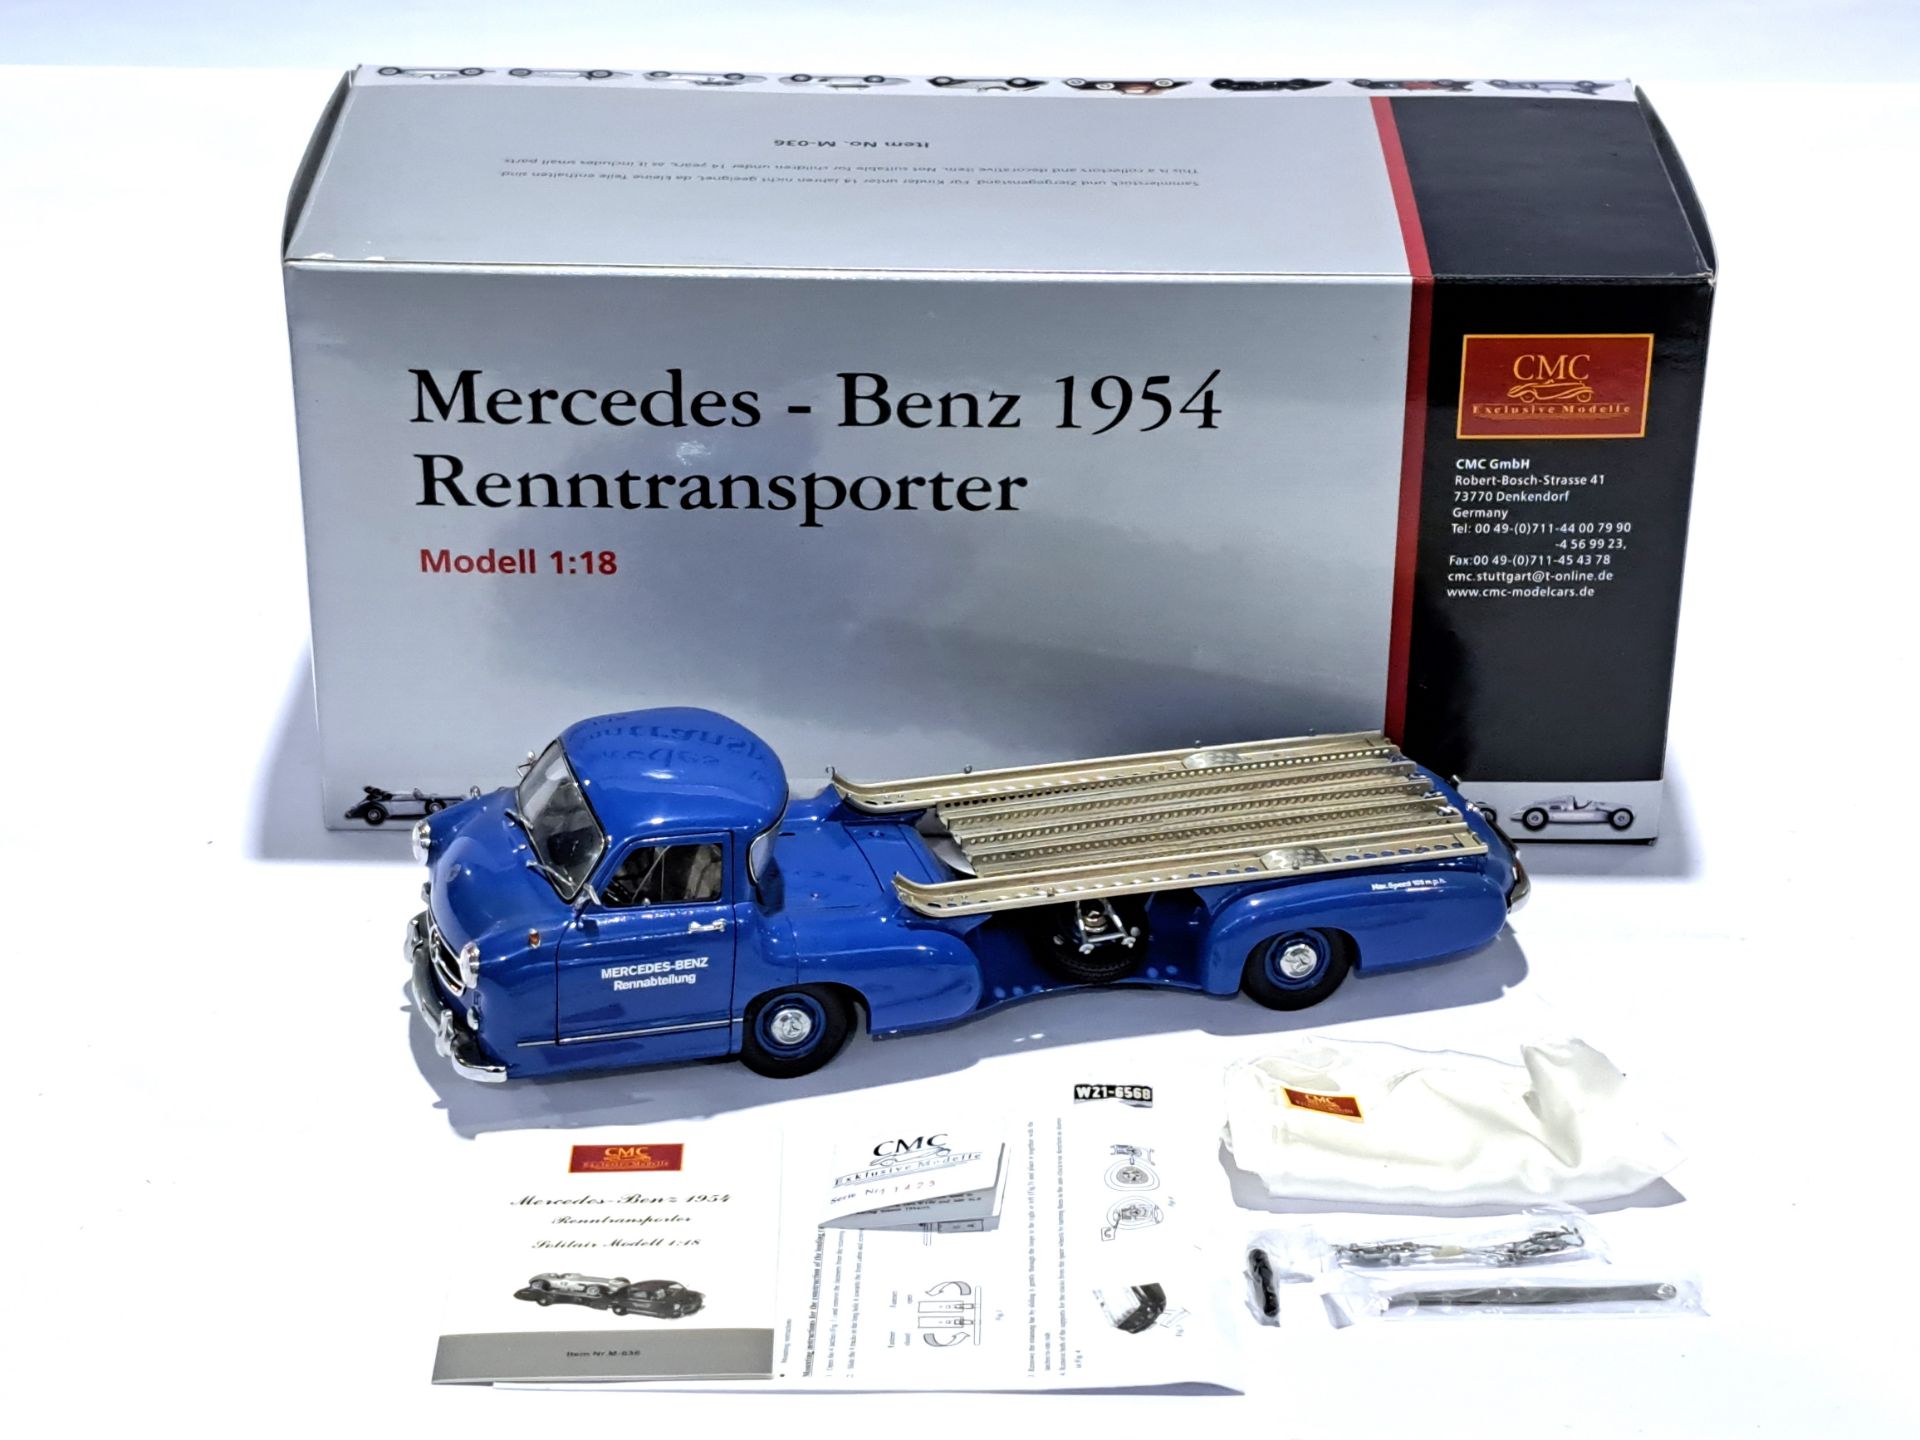 CMC 1:18 scale M-036 Mercedes - Benz Renntransporter 1954